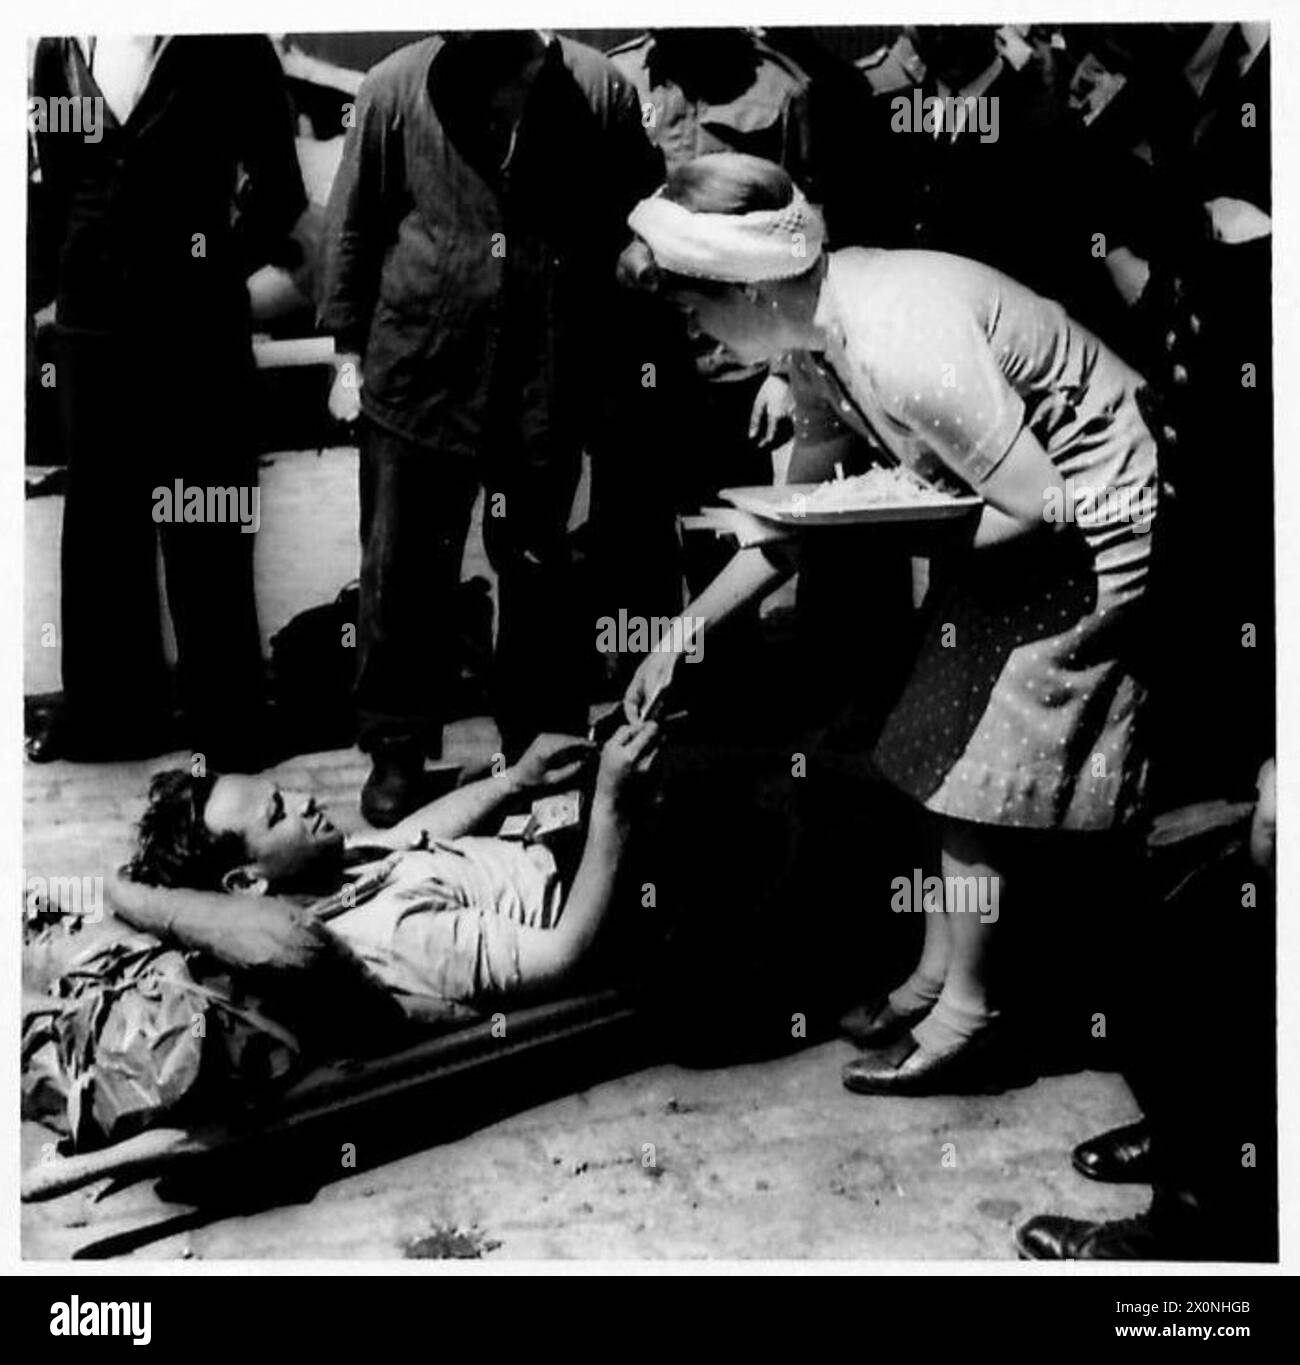 L'ARRIVÉE de B.E.FS À PLYMOUTH - Un tommy britannique blessé sur le quai à Plymouth reçoit des cadeaux d'une femme aide. Négatif photographique, Armée britannique Banque D'Images